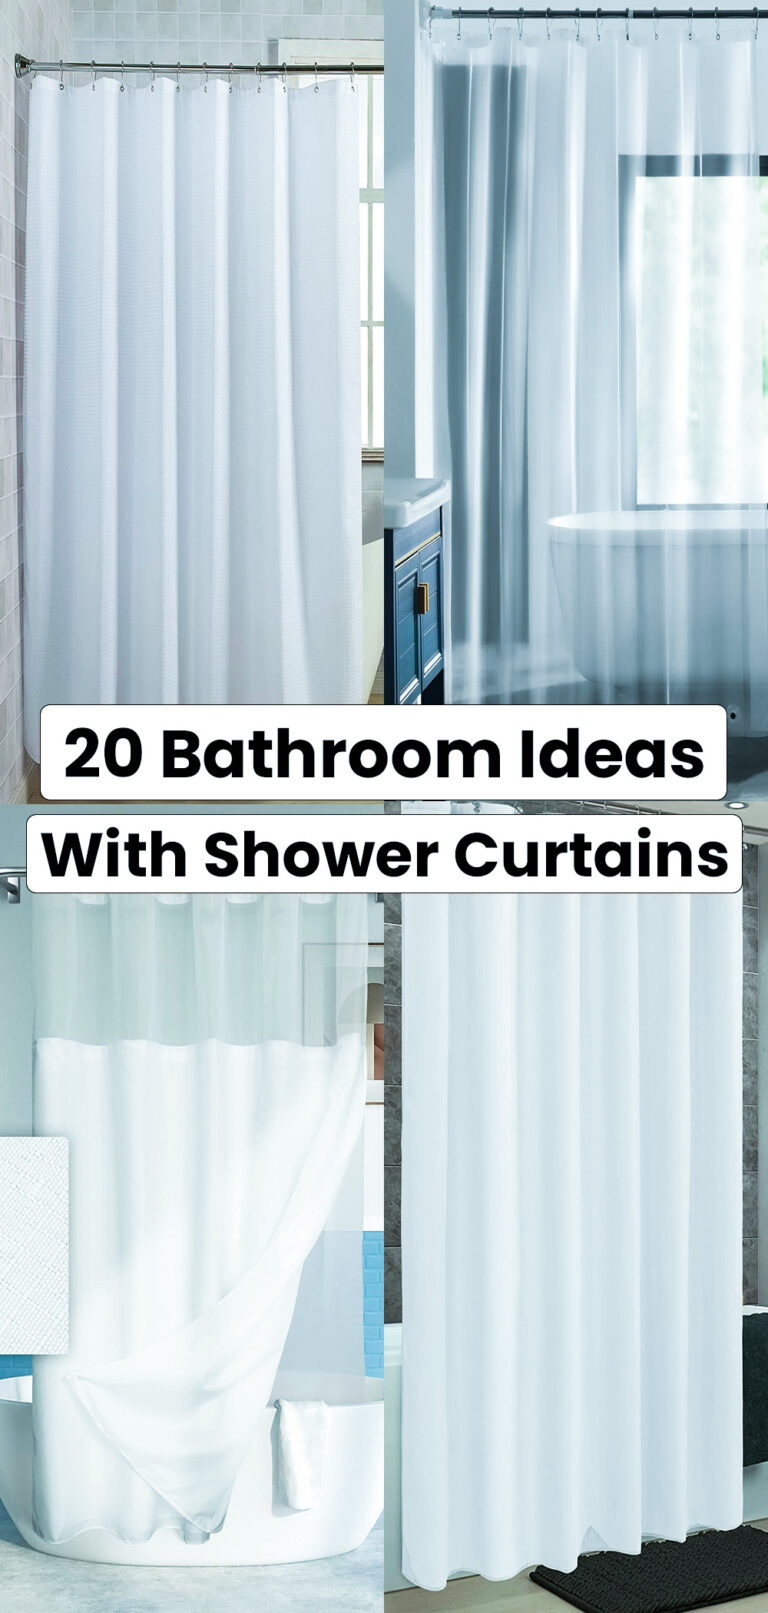 20 Bathroom Ideas With Shower Curtains